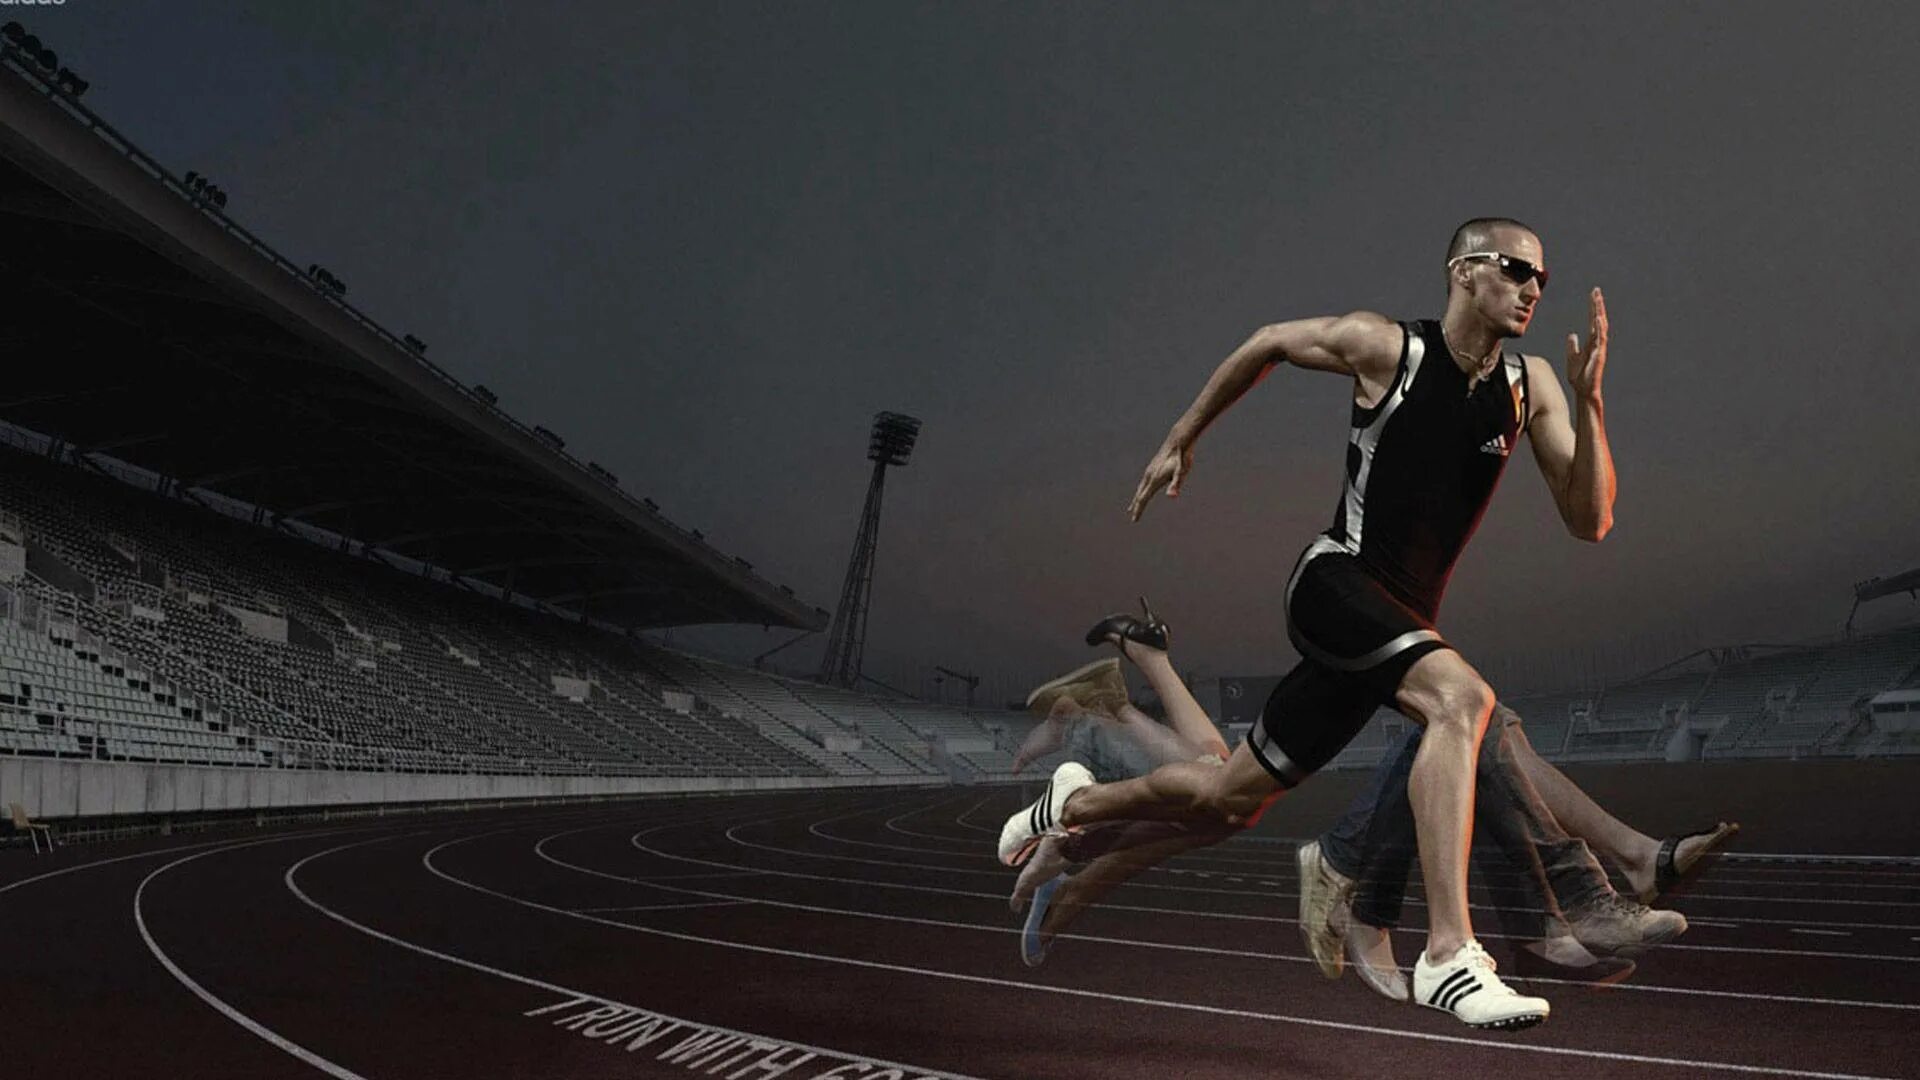 Олимпийский бегун Замперини. Спортсмены в движении. Спортсмен бег. Быстрота движения. Track effect